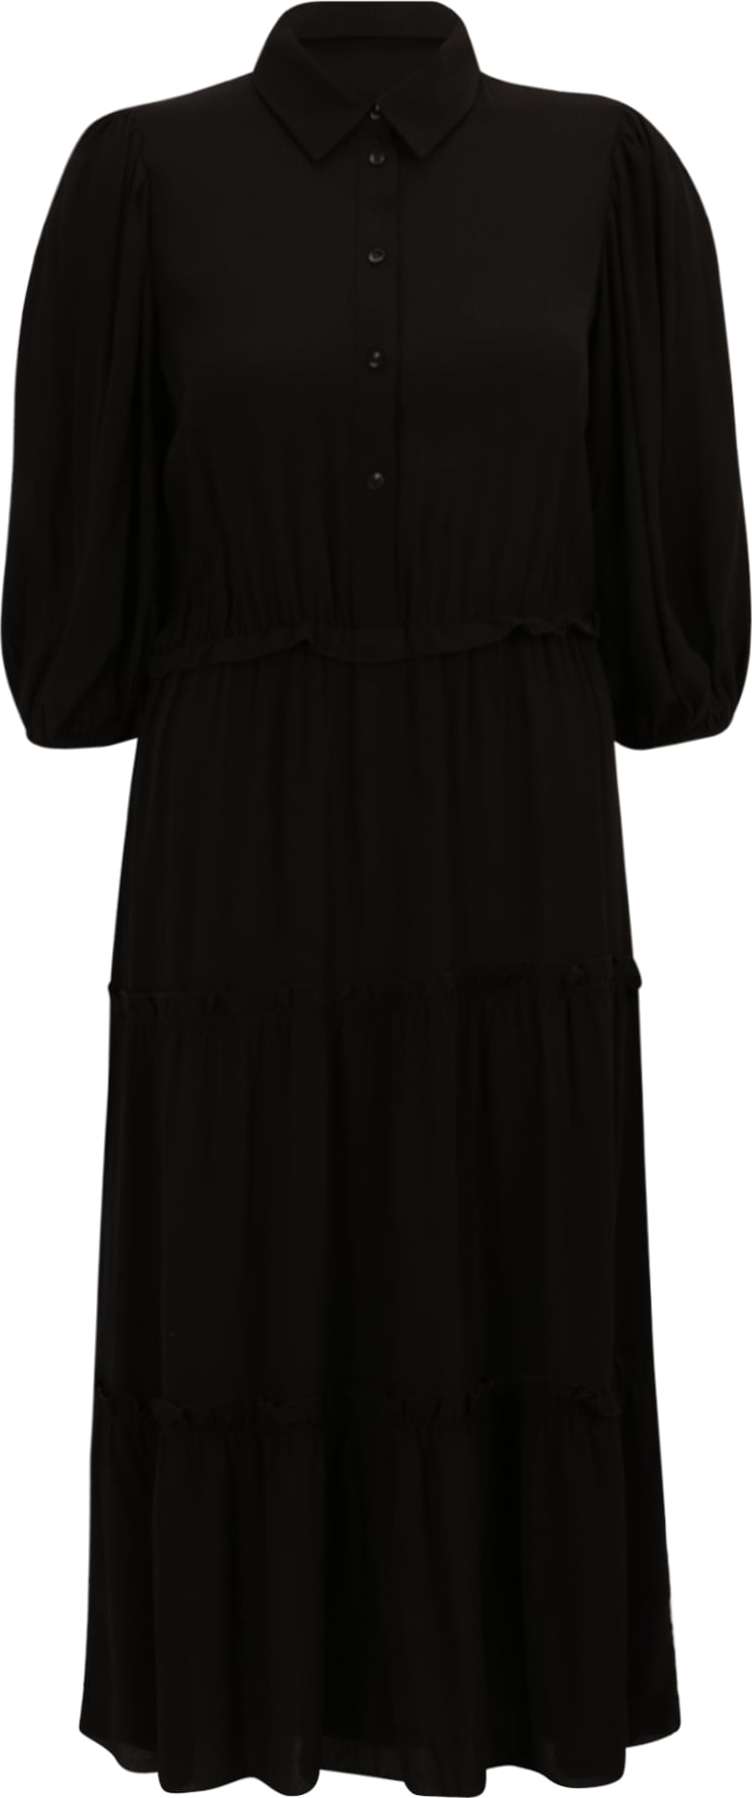 ESPRIT Košilové šaty černá